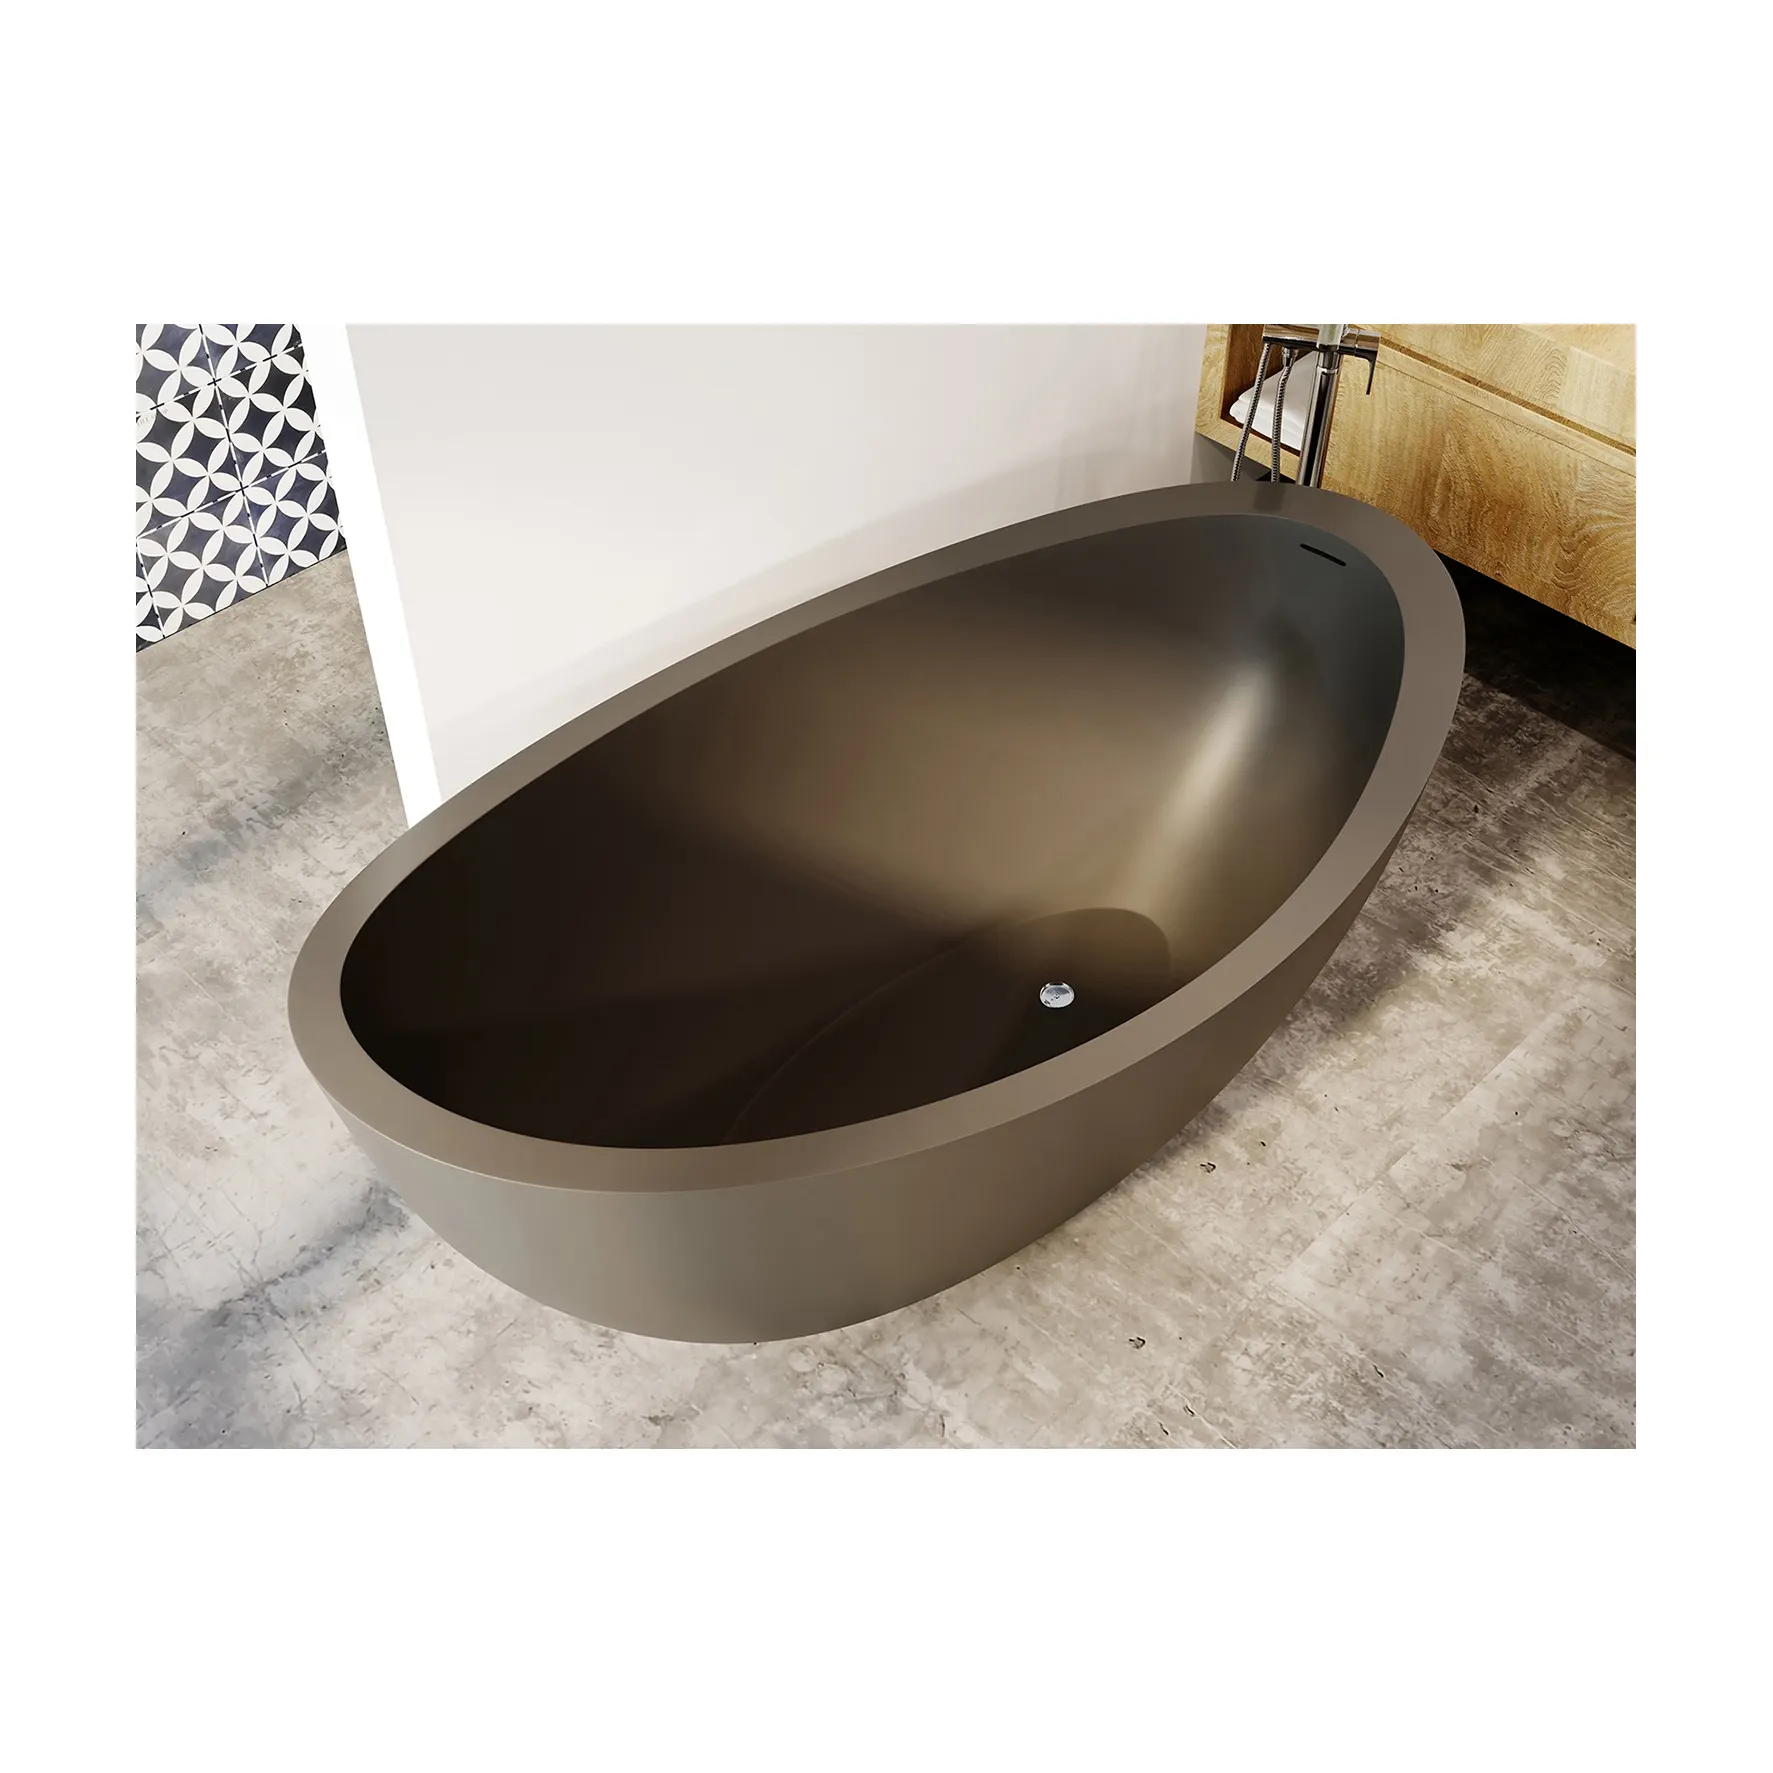 MY 005 nuovi articoli caldi mobili per la casa autoportante resistenza alle macchie vasca da bagno Terrazzo inorganico